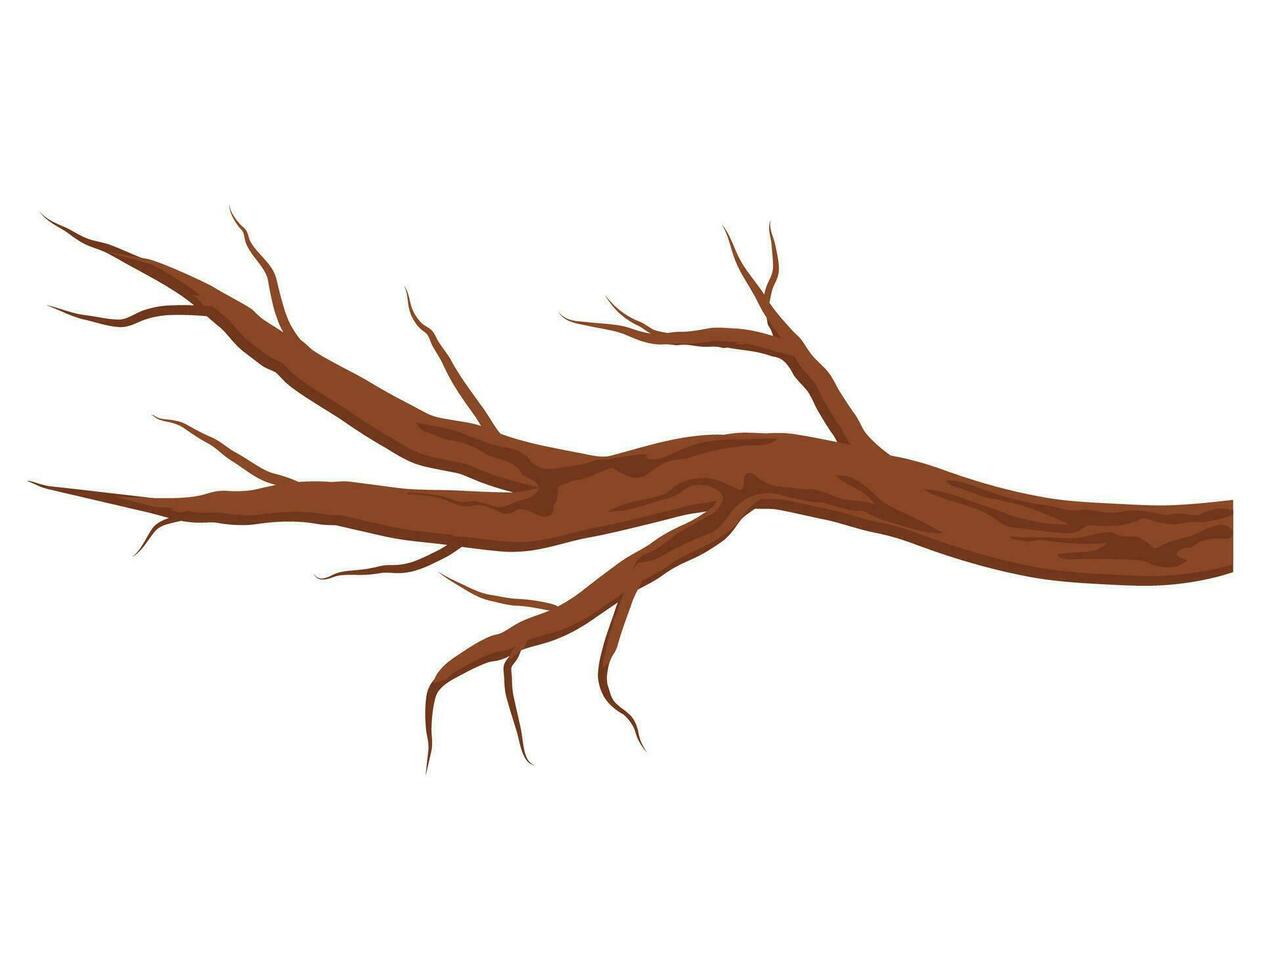 nackt braun Baum Ast ohne Blätter isoliert auf Weiß Hintergrund. Herbst oder Winter Ast. Vektor Illustration